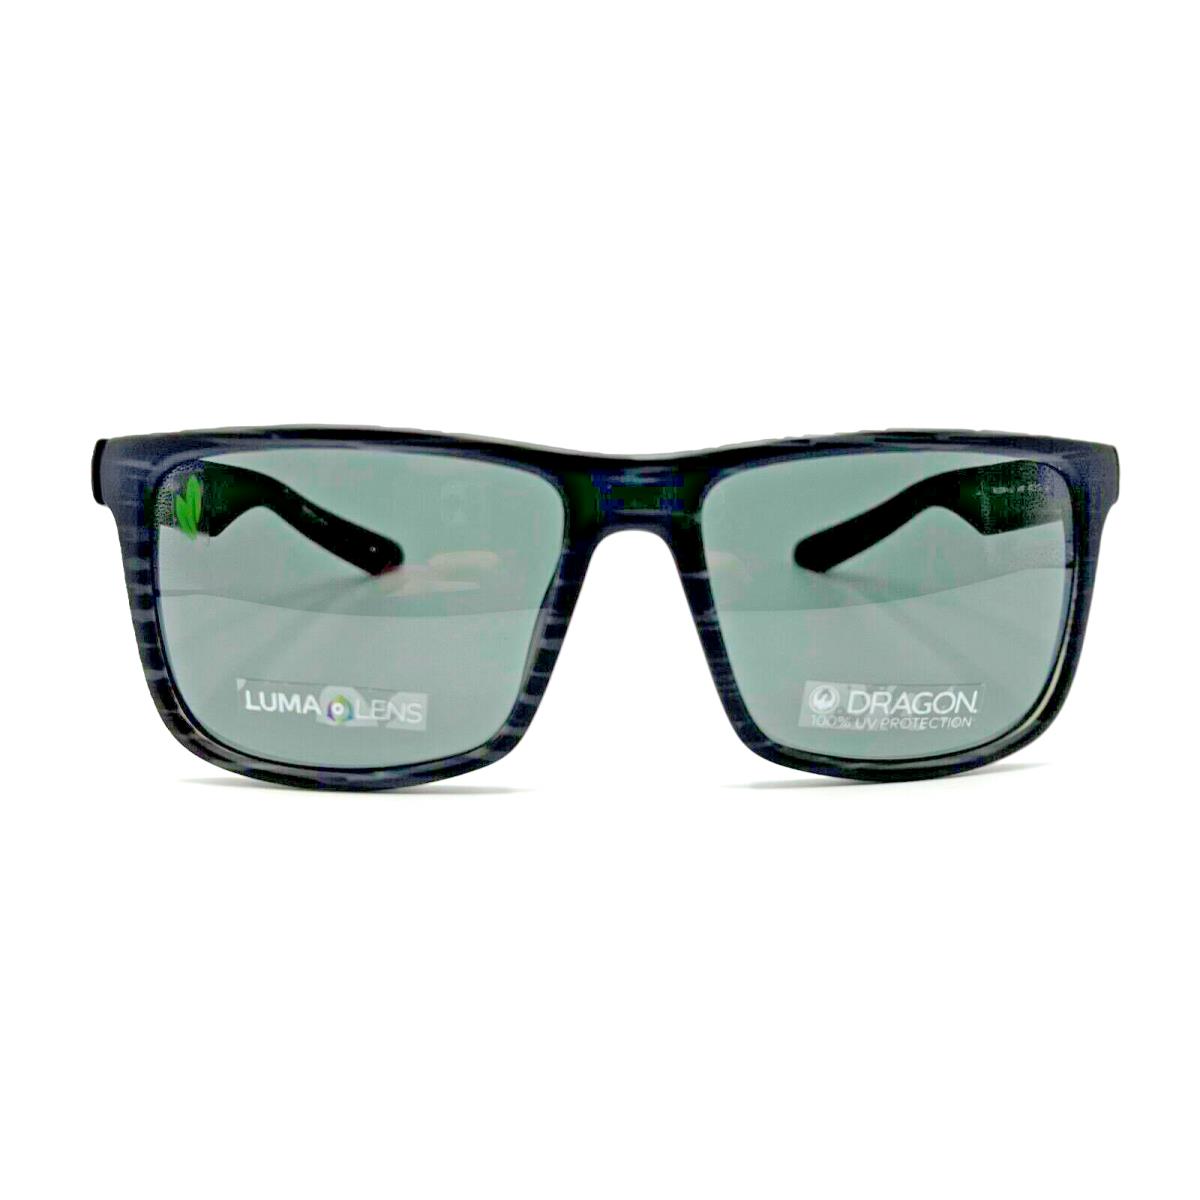 Dragon - Meridien LL 033 57/17/145 - Drift Wood - Men Sunglasses - Gray Frame, Gray Lens